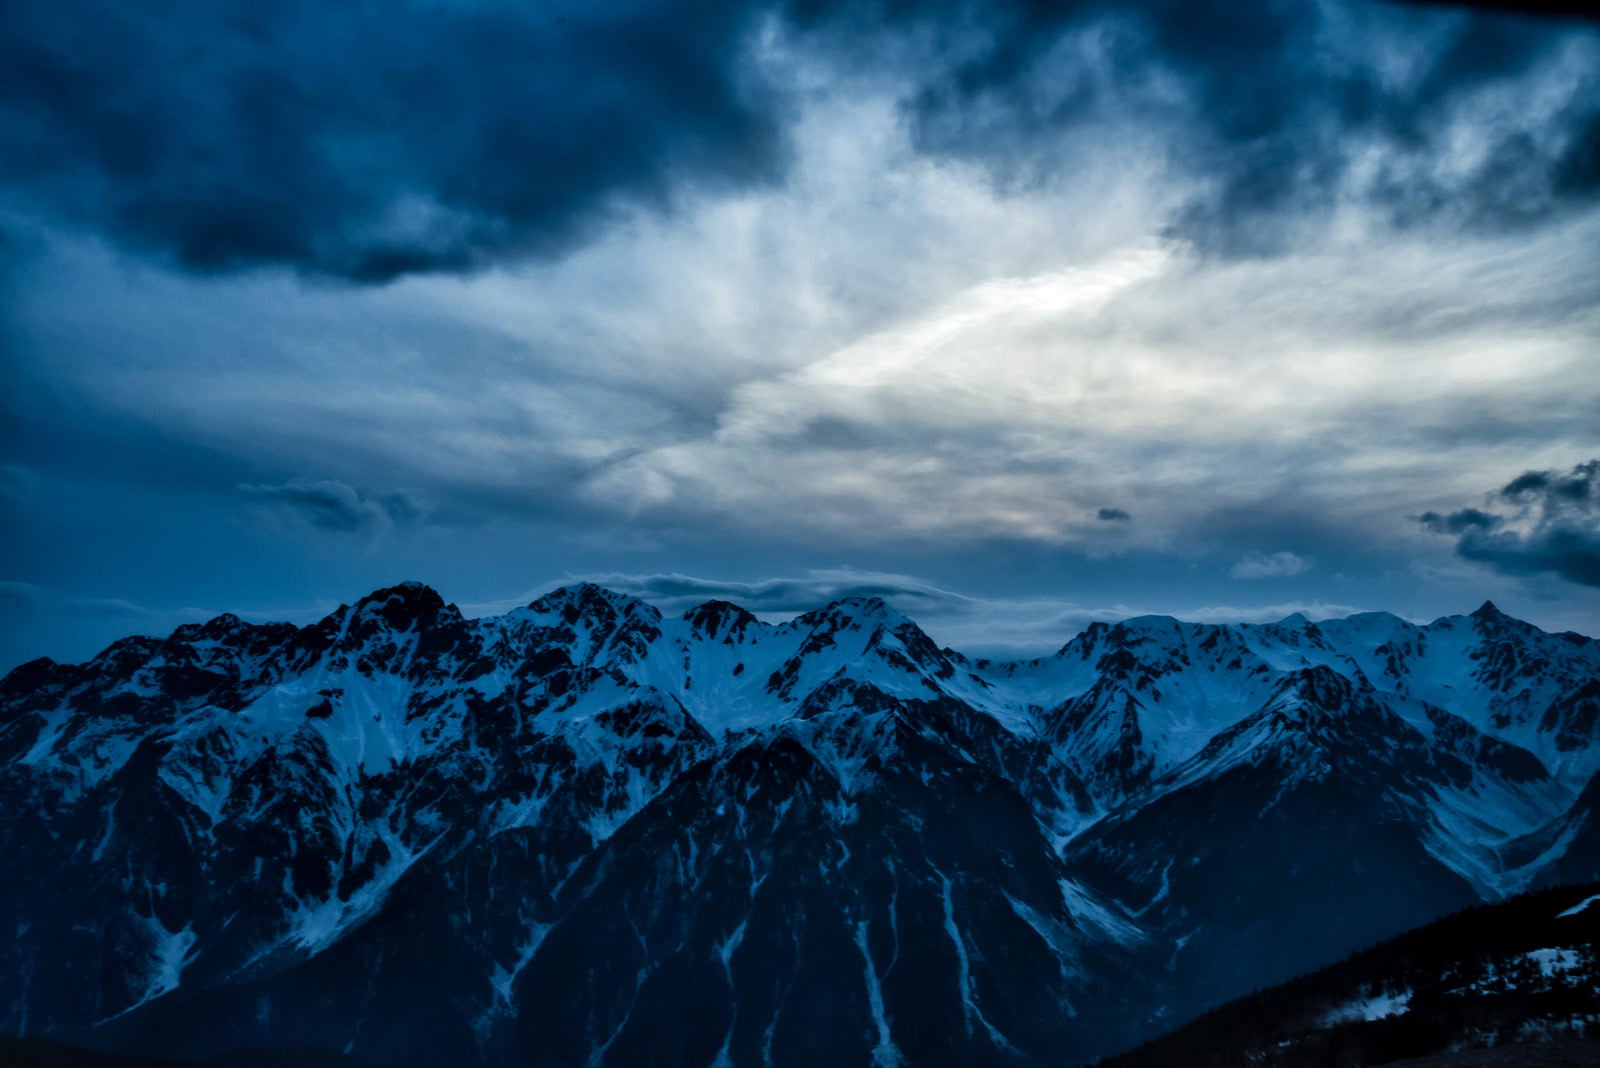 「飛騨山脈にかかる傘雲」の写真